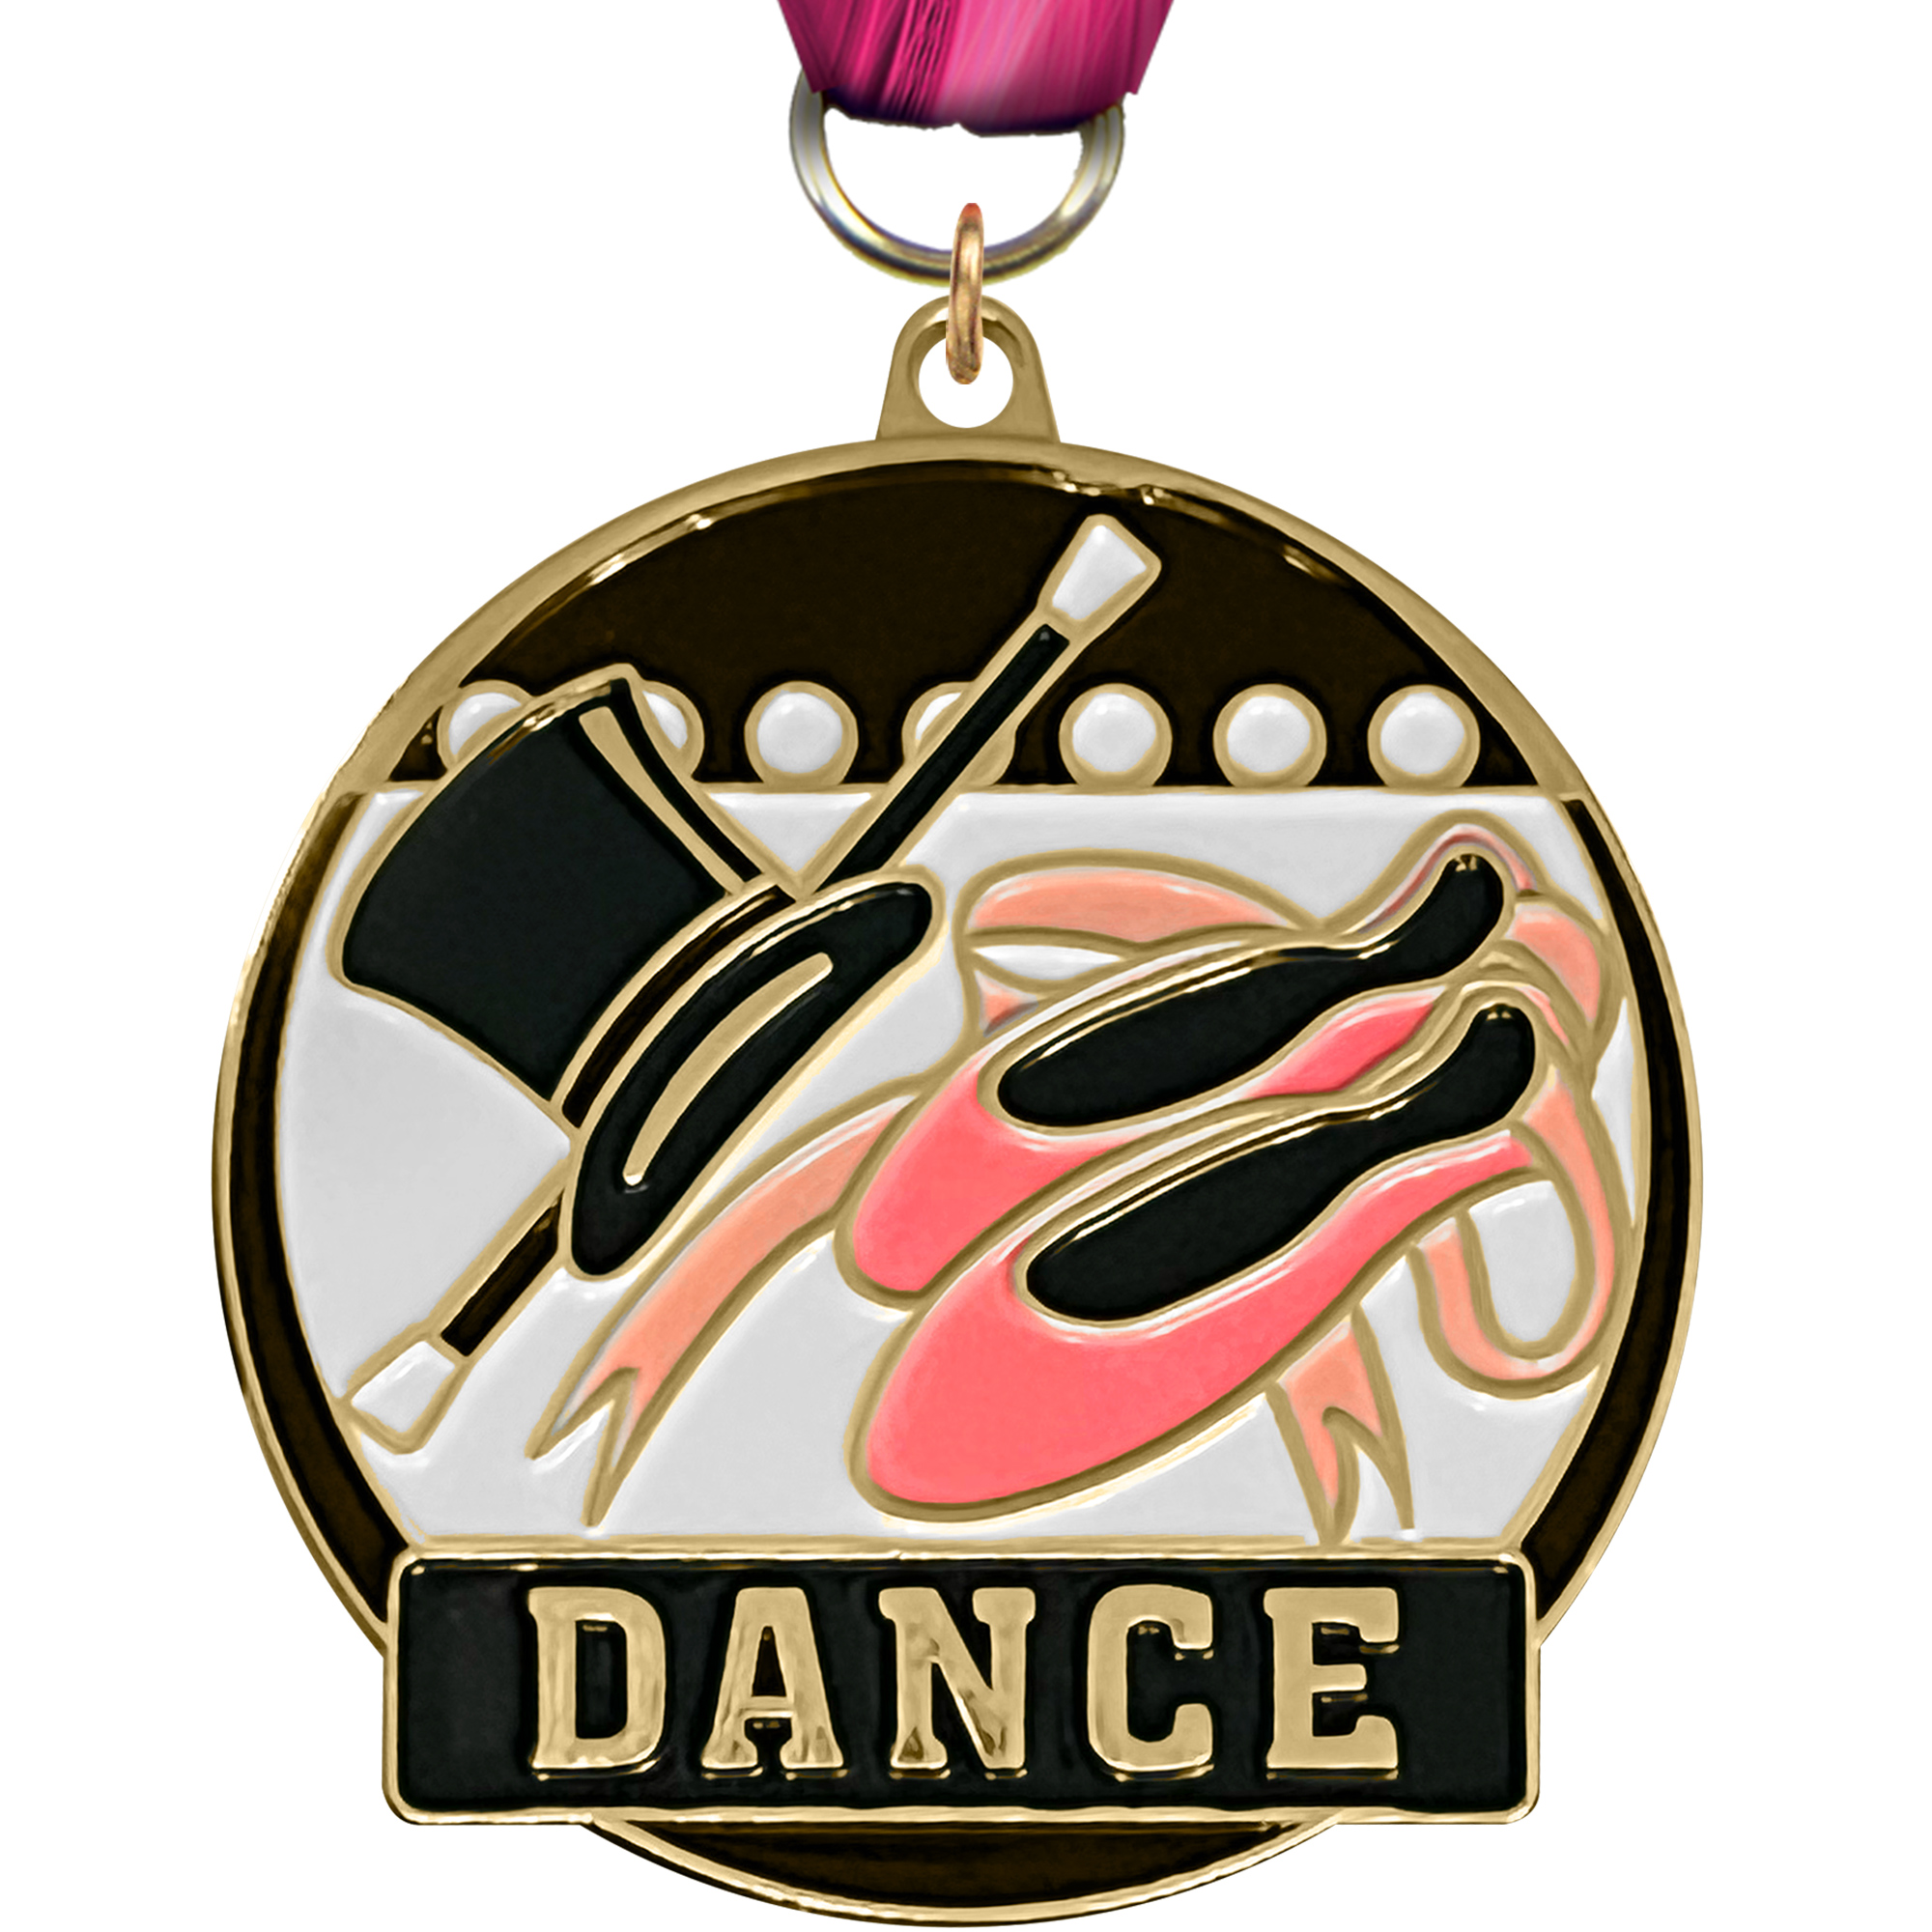 Dance Enameled Medal